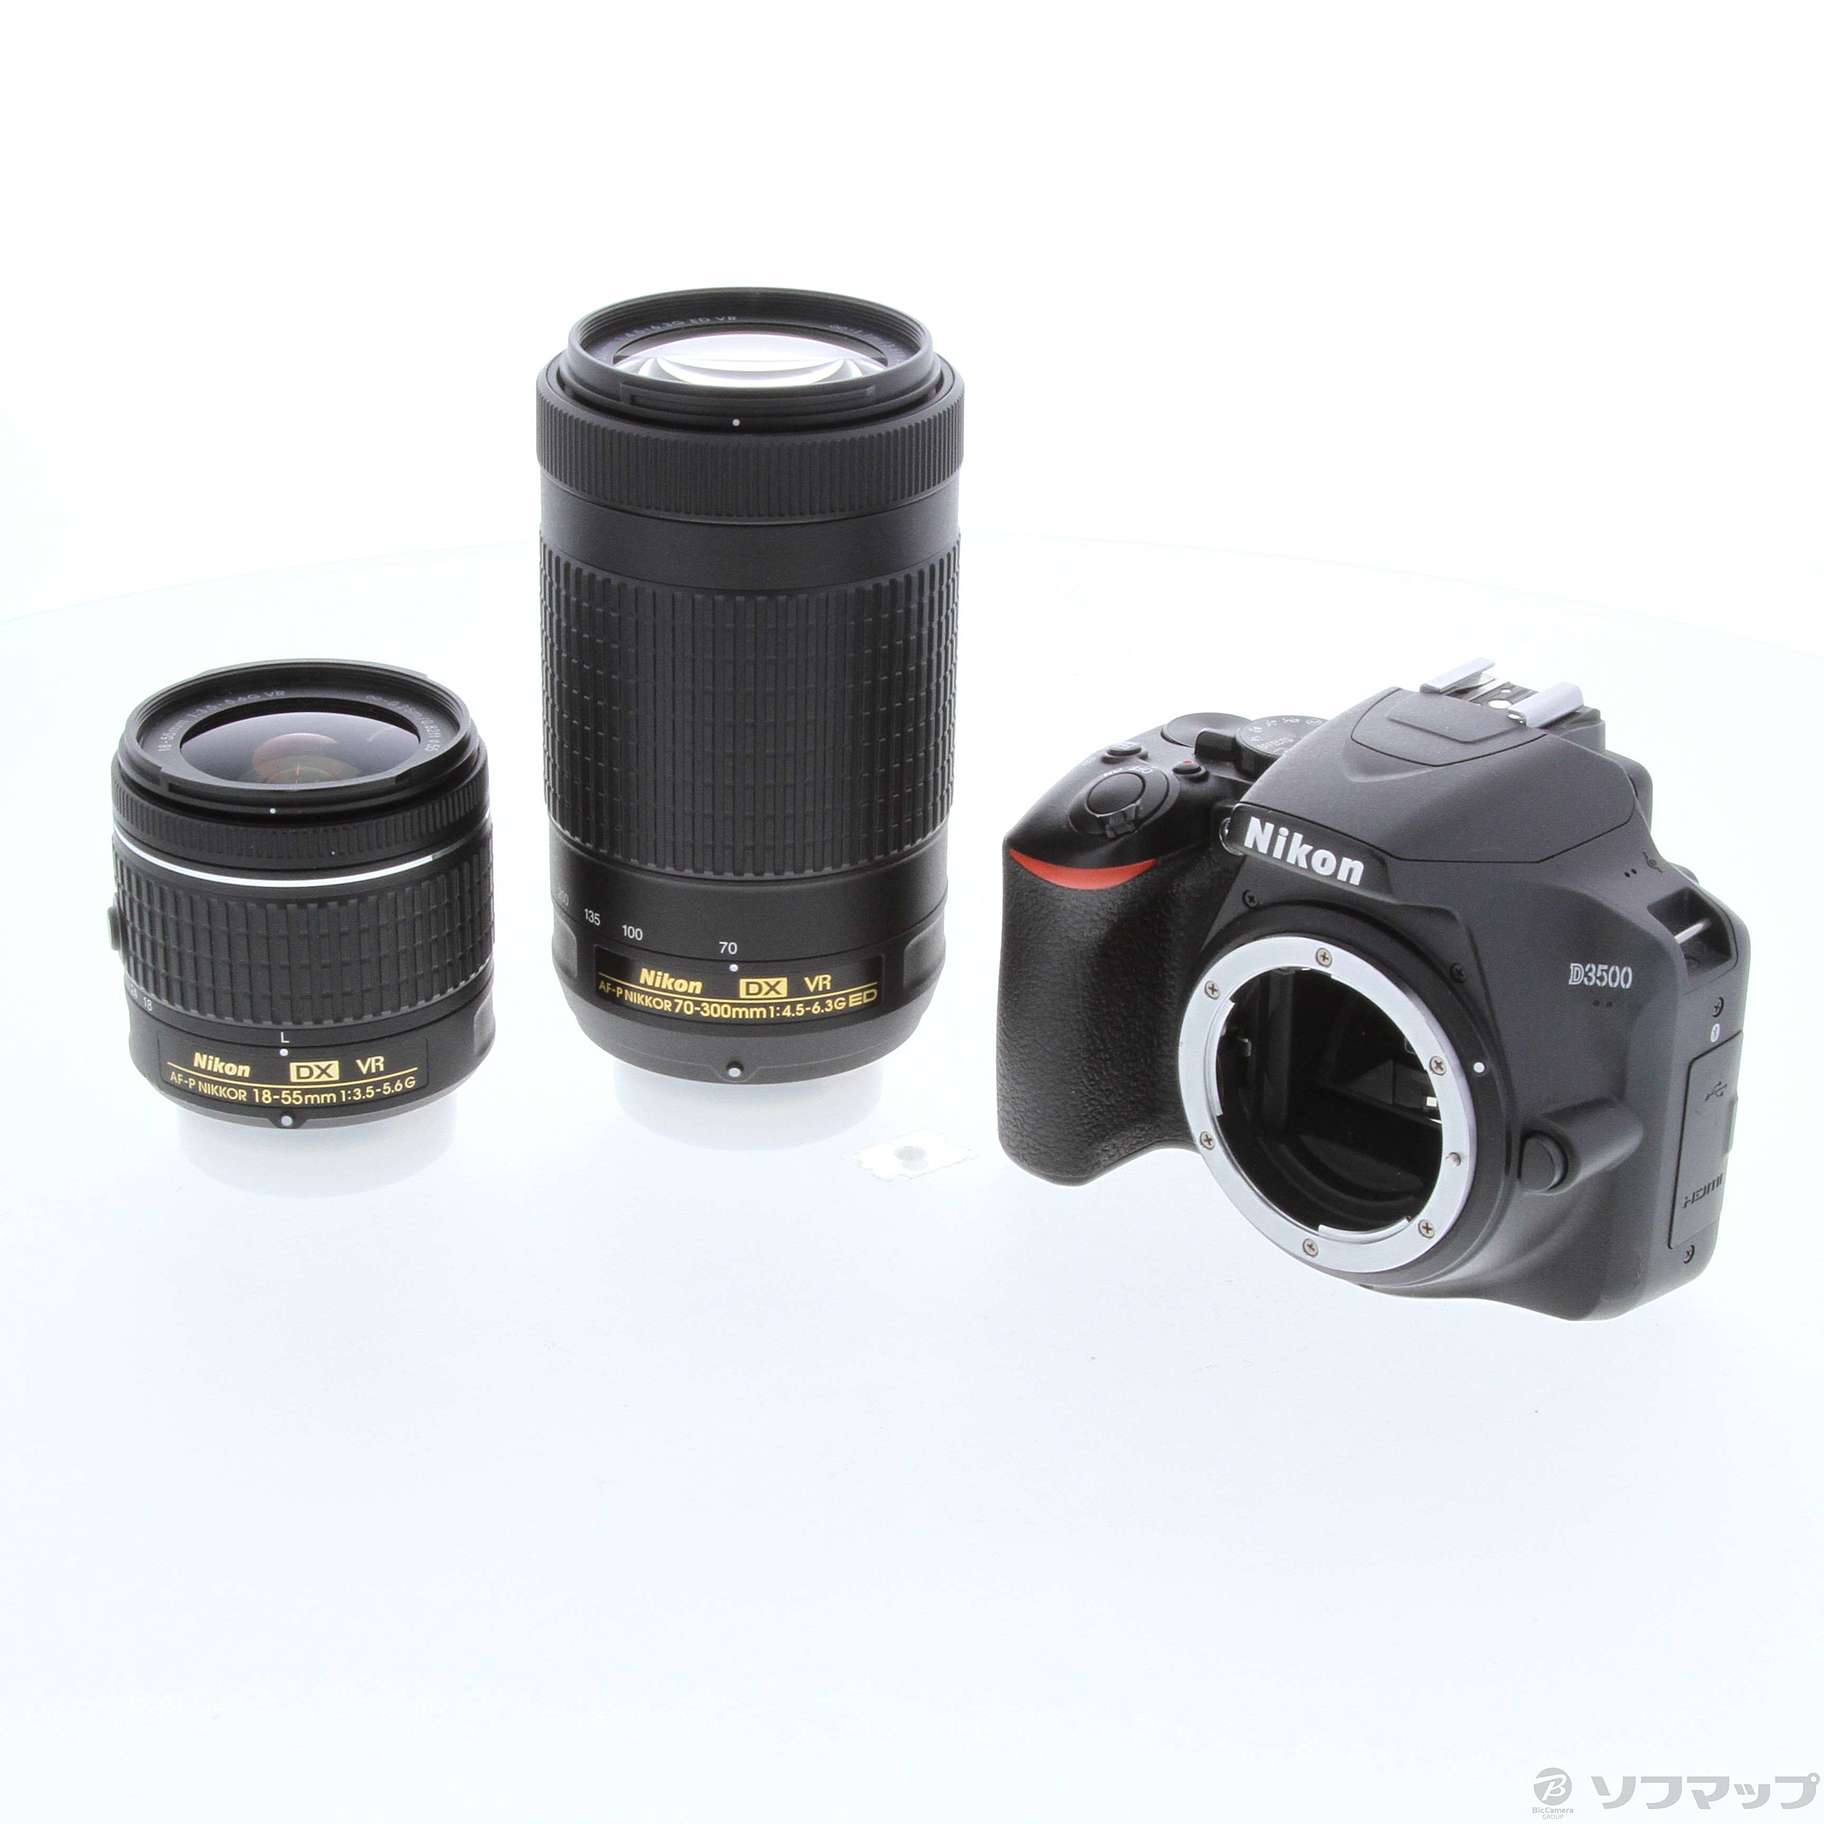 ニコン D3500 ダブルズームキット Nikon